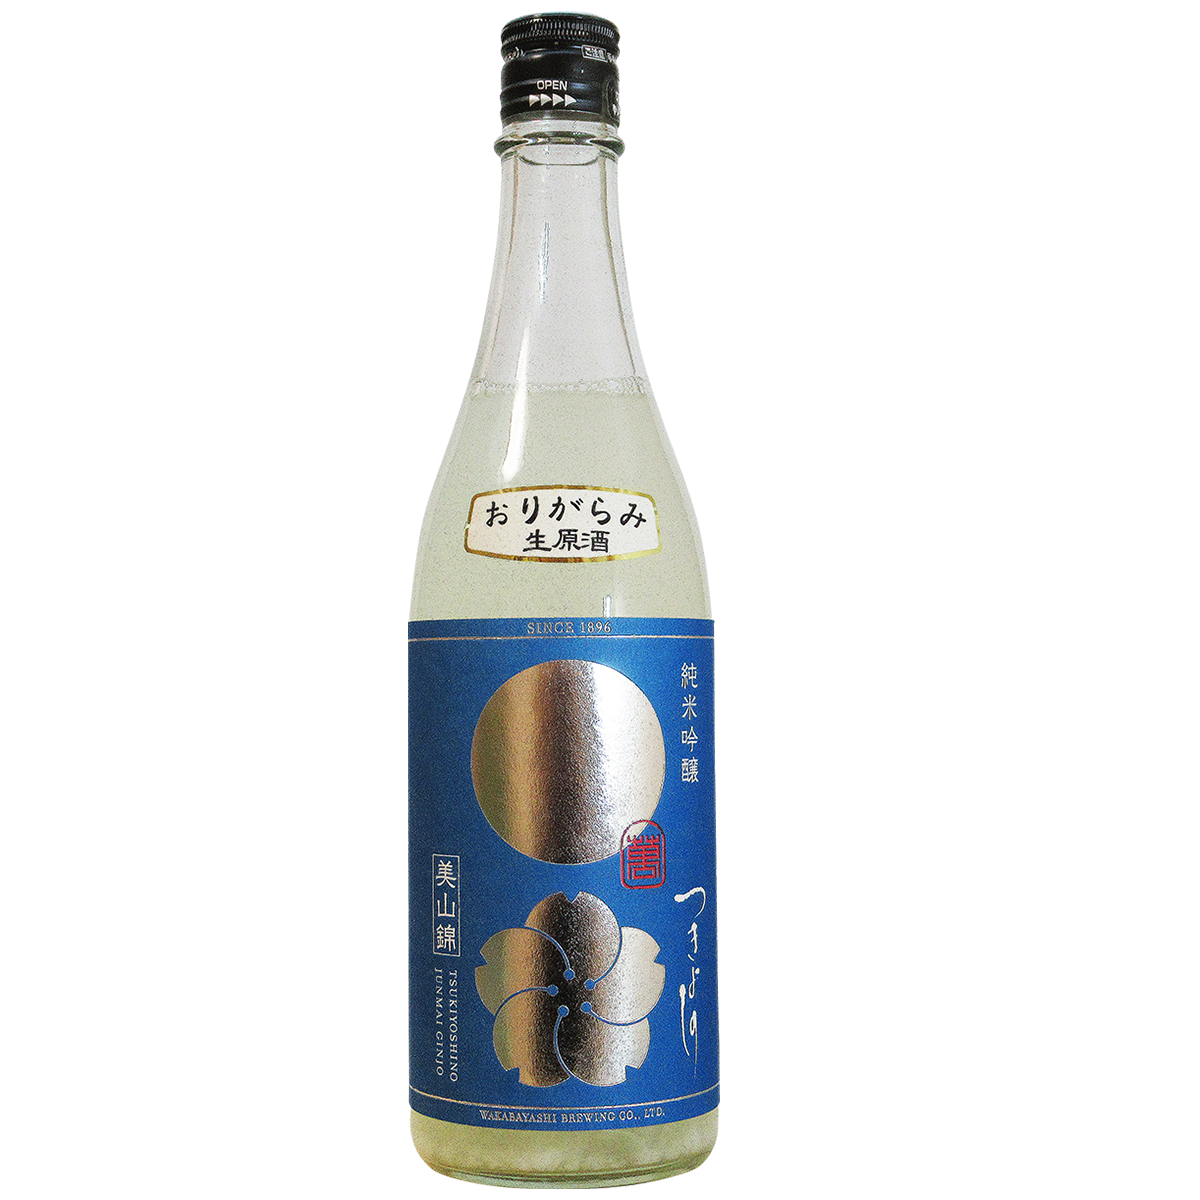 長野県 若林醸造/つきよしの 純米吟醸 空 おりがらみ生原酒  (クール便)